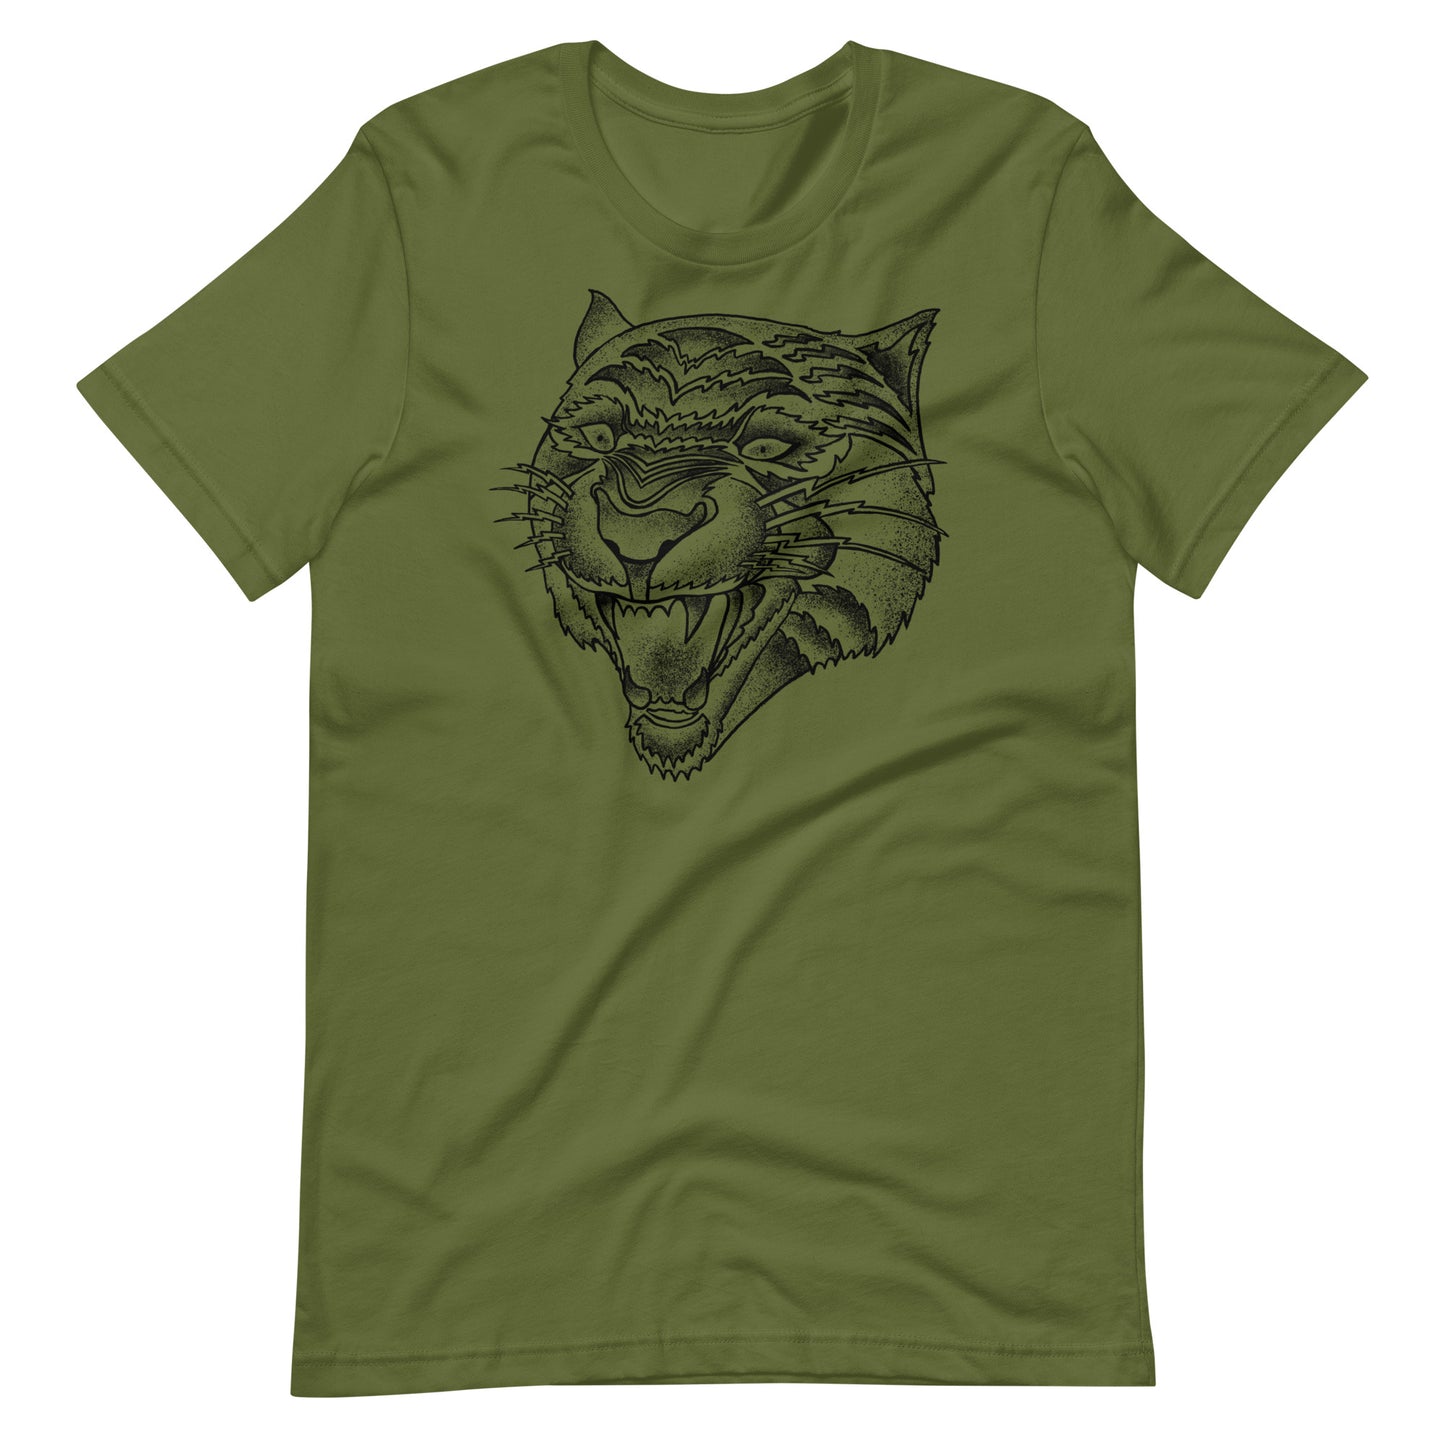 Panther Black - Men's t-shirt - Olive Front